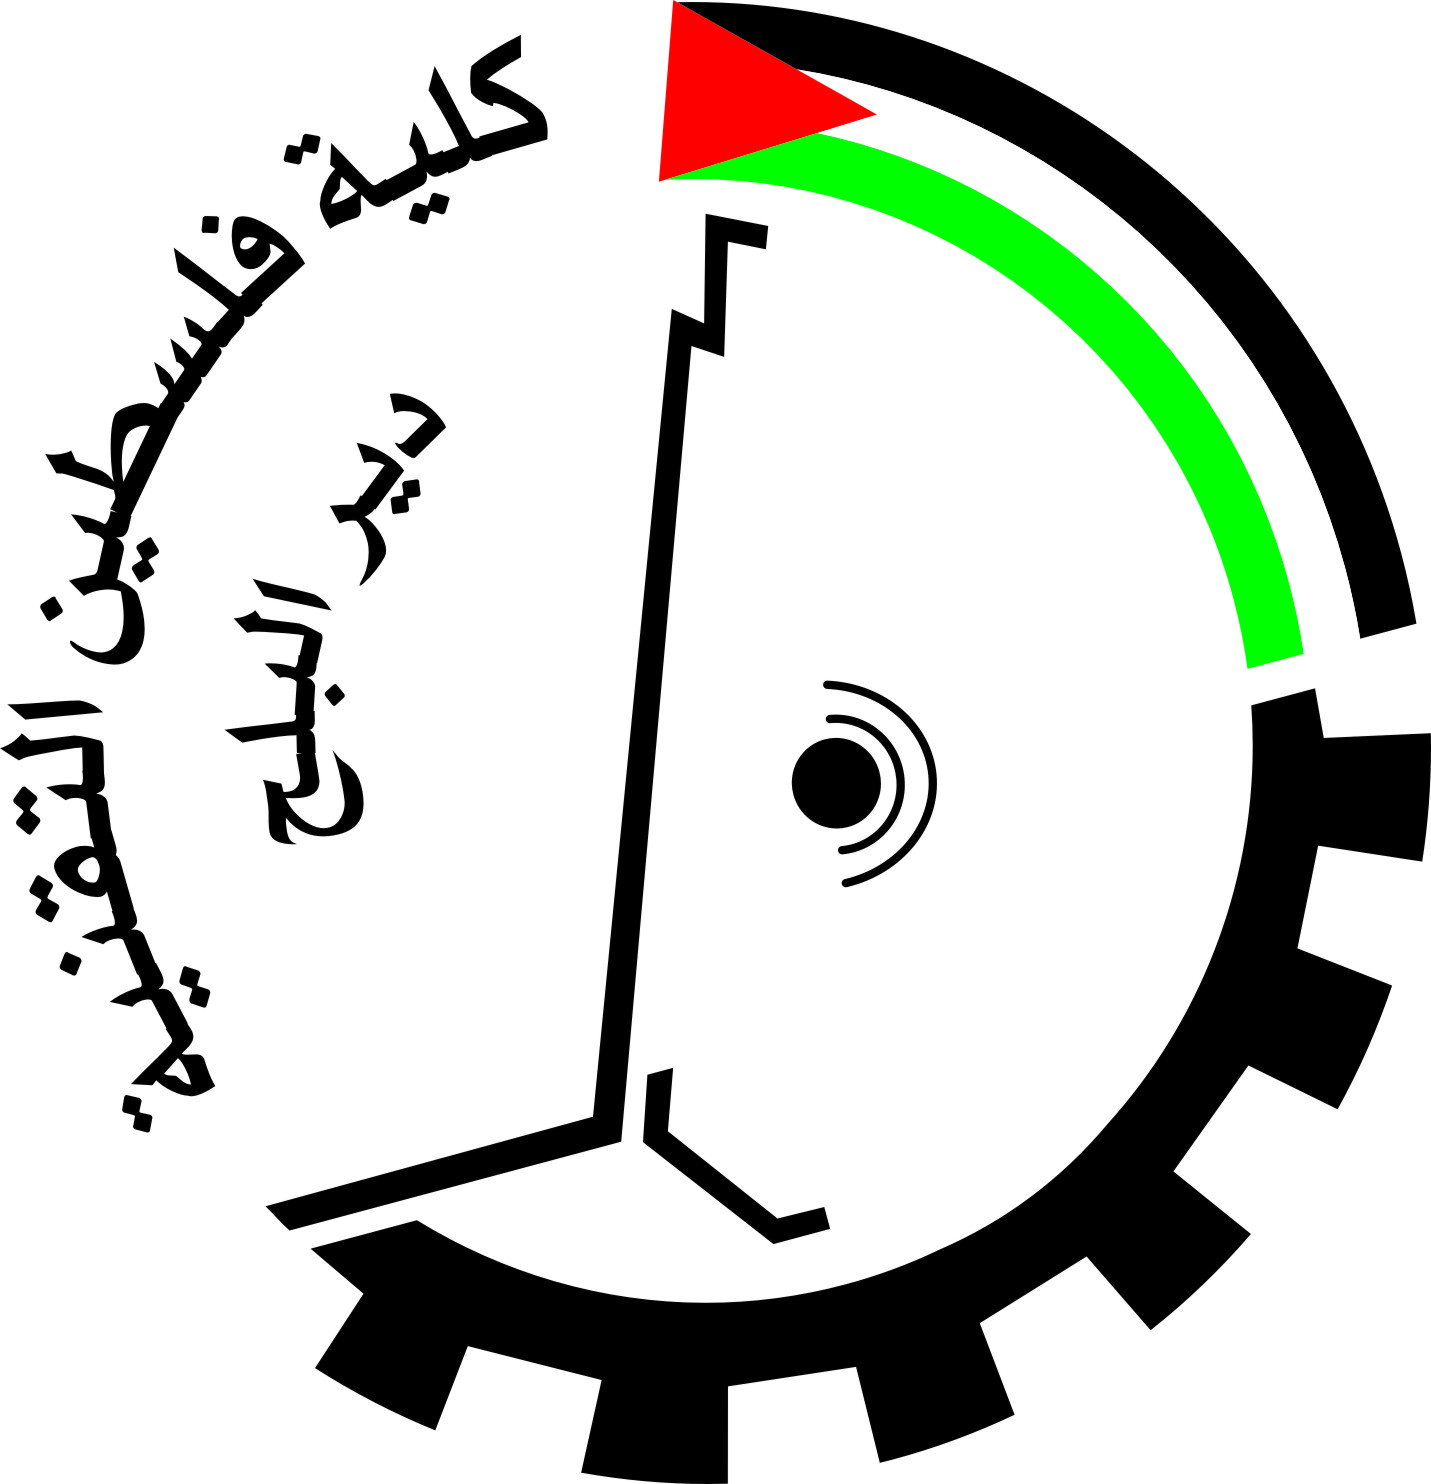 دولة فلسطين: روابط فلسطين الكلية التقنية-دير البلح